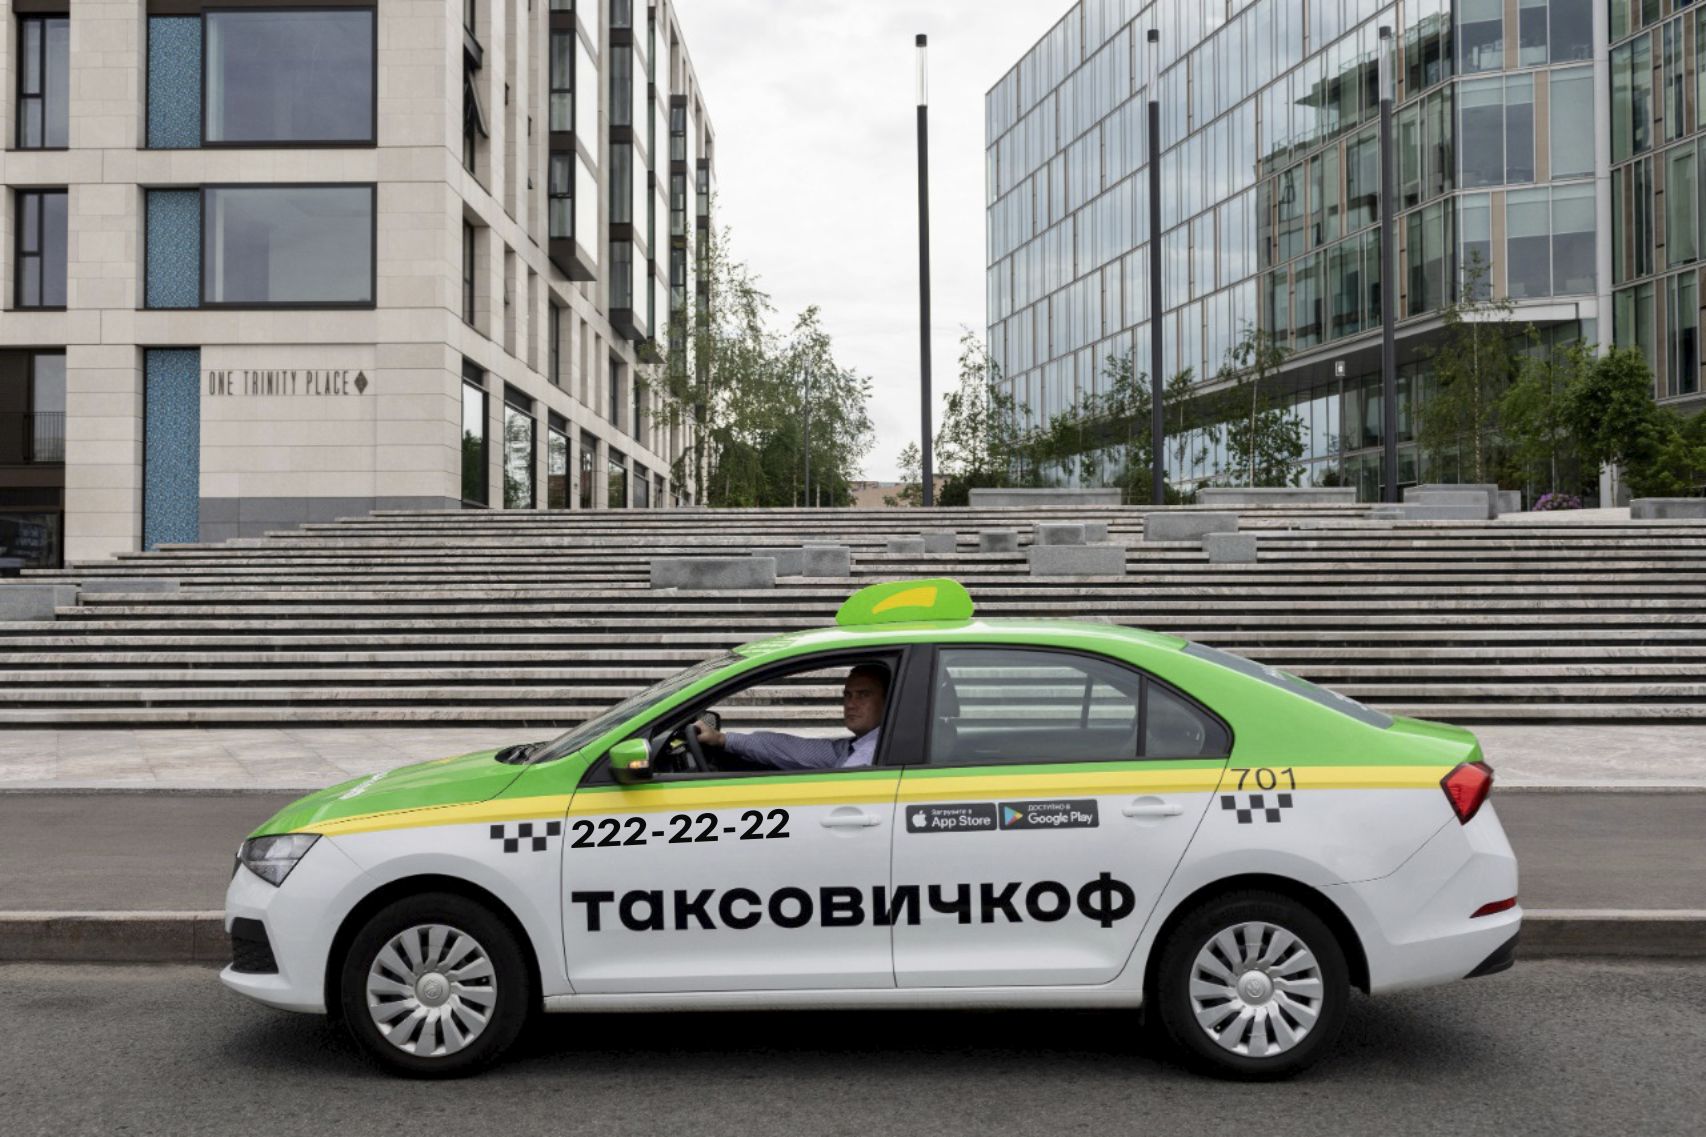 В Новосибирск пришел новый агрегатор такси «Таксовичкоф» — какие цены и сервис обещают пассажирам